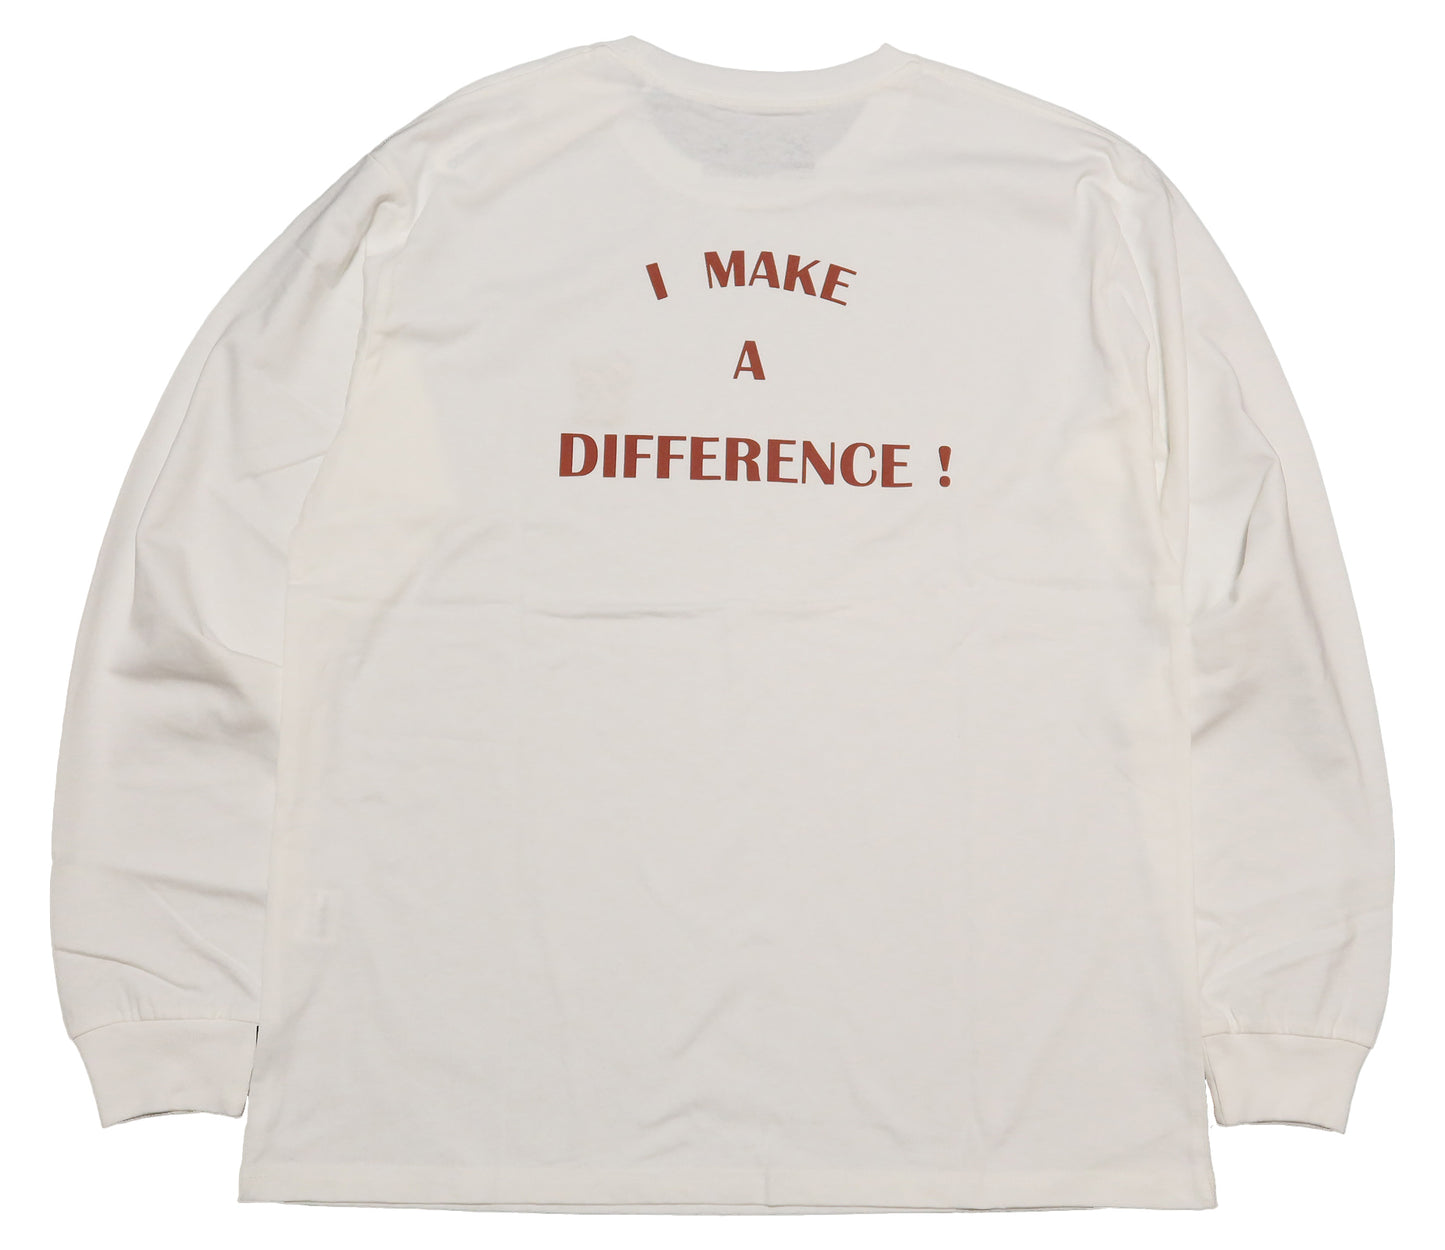 BLUCO ブルコ 長袖Tシャツ DIFFERENCE プリント ロゴ メンズ ロングTシャツ ロンT 141-12-003